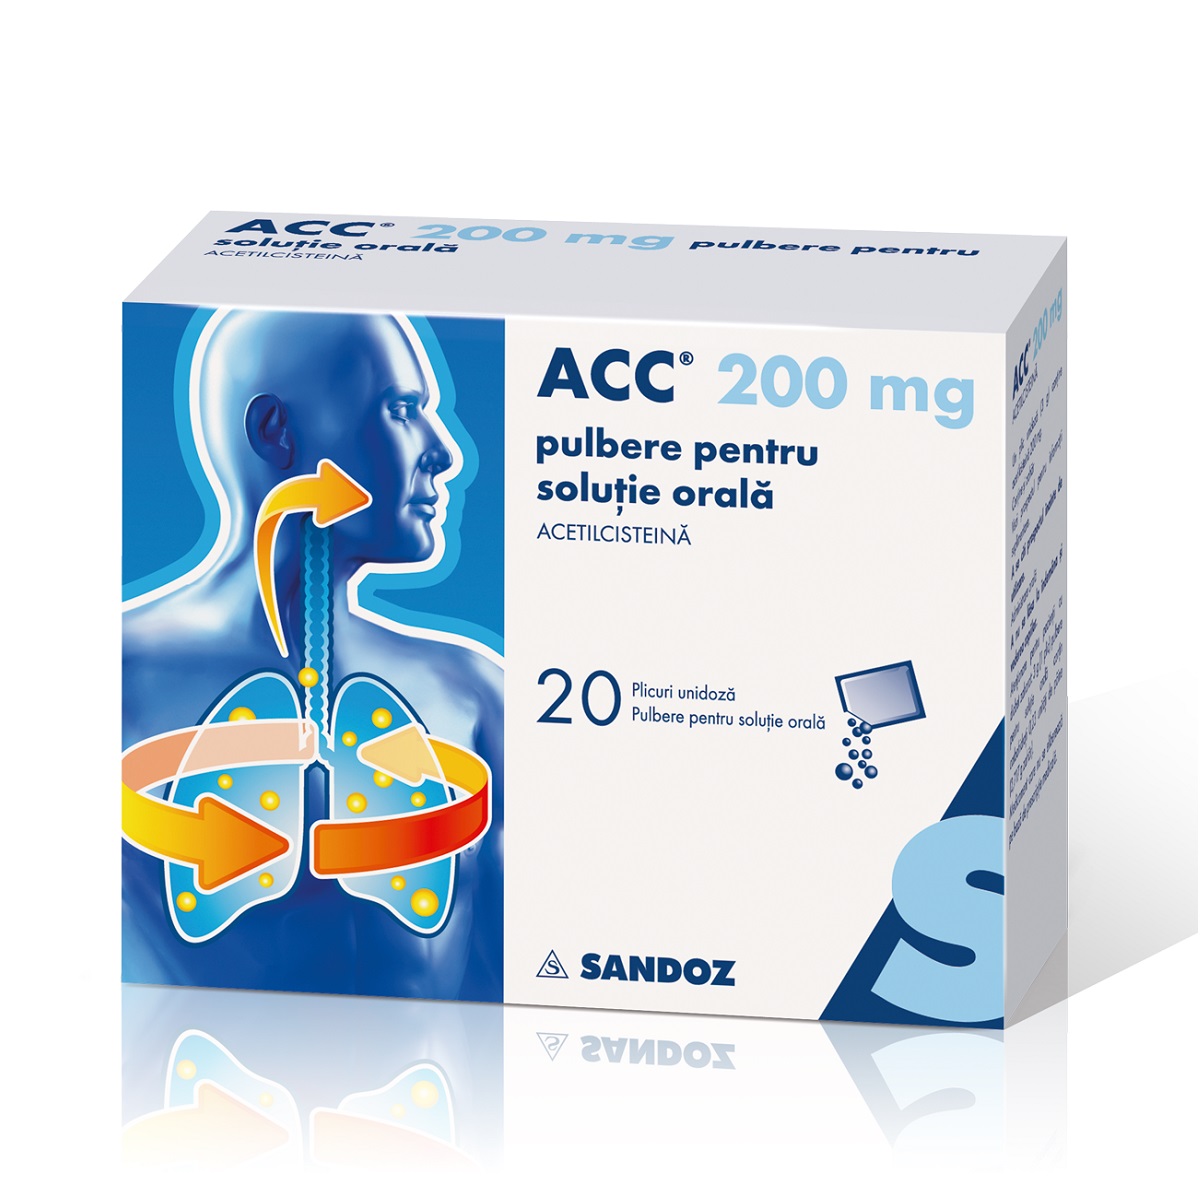 Raceala si gripa - Acc, 200 mg pulbere pentru soluţie orală, 20 plicuri, Sandoz, nordpharm.ro